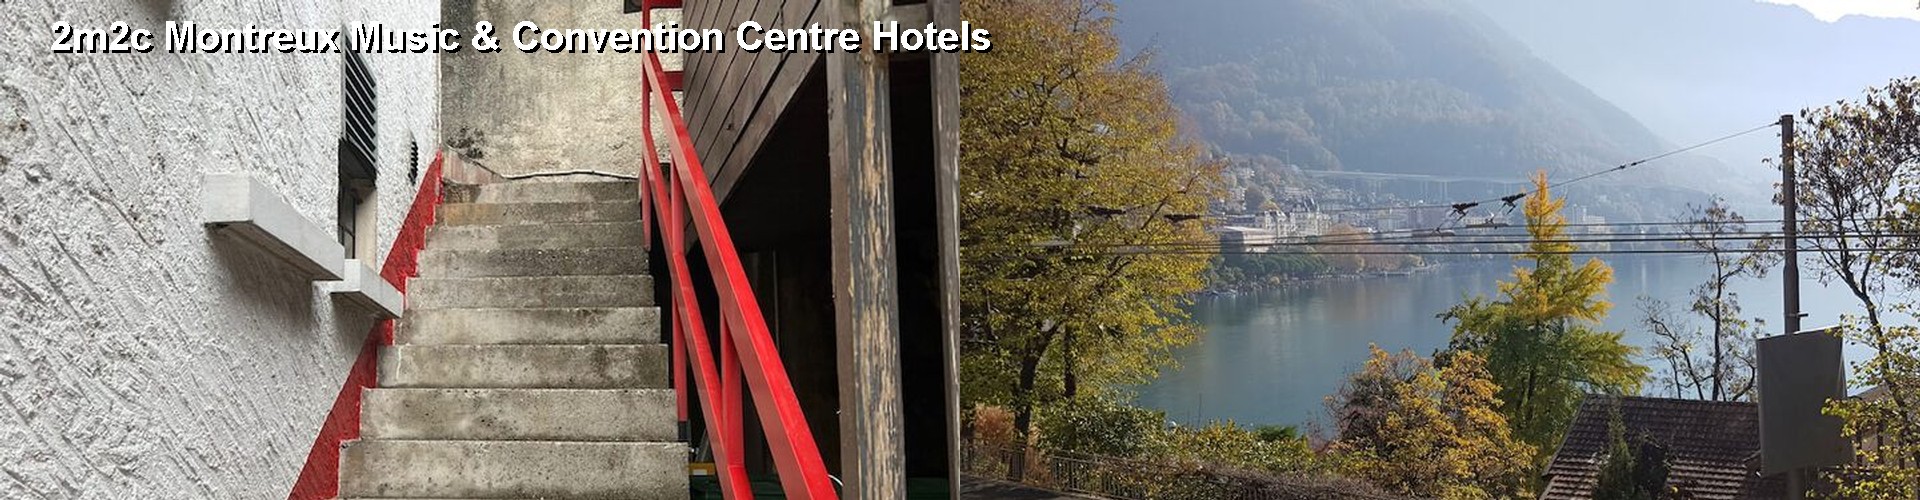 5 Best Hotels near 2m2c Montreux Music & Convention Centre